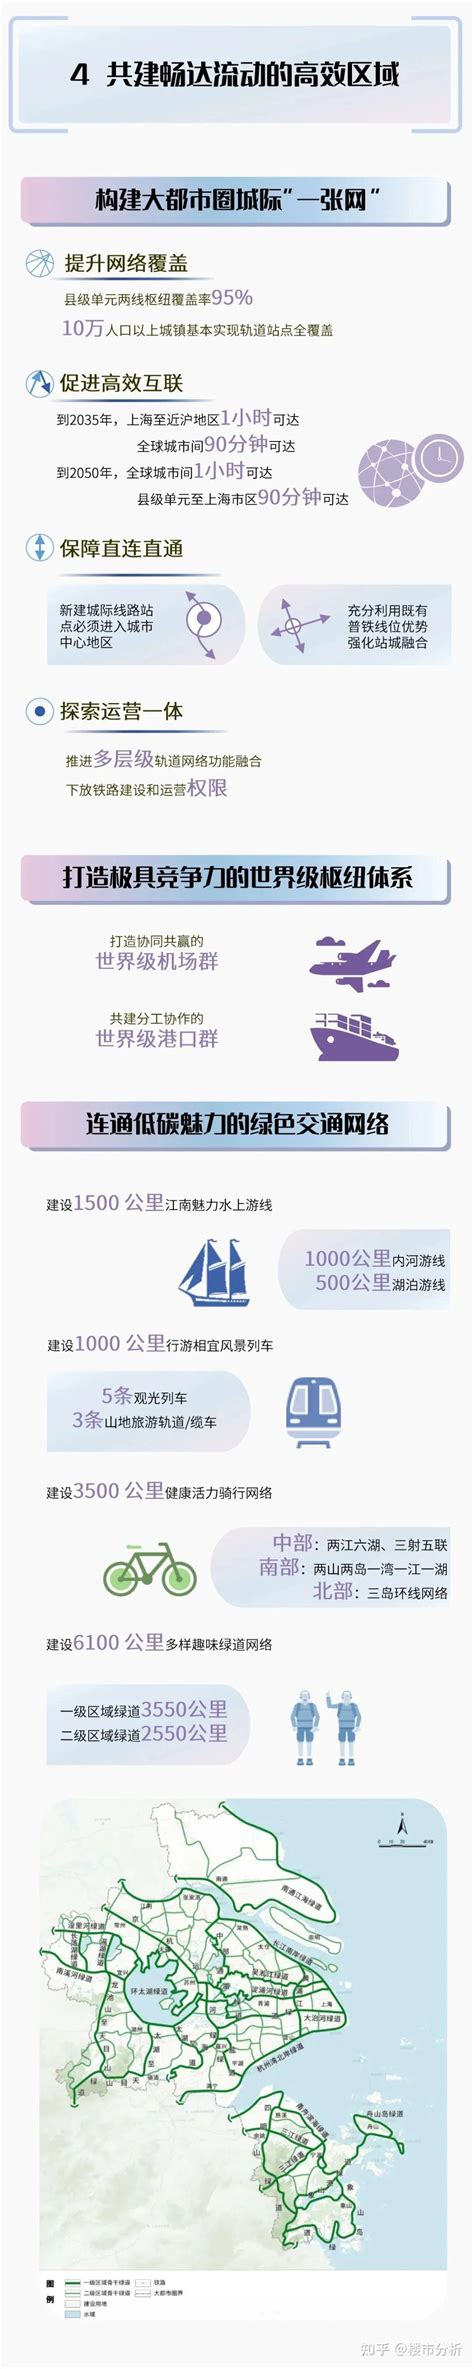 好地网--杭州市区高中布局规划：至2035年学位数翻倍，萧山区容量居首